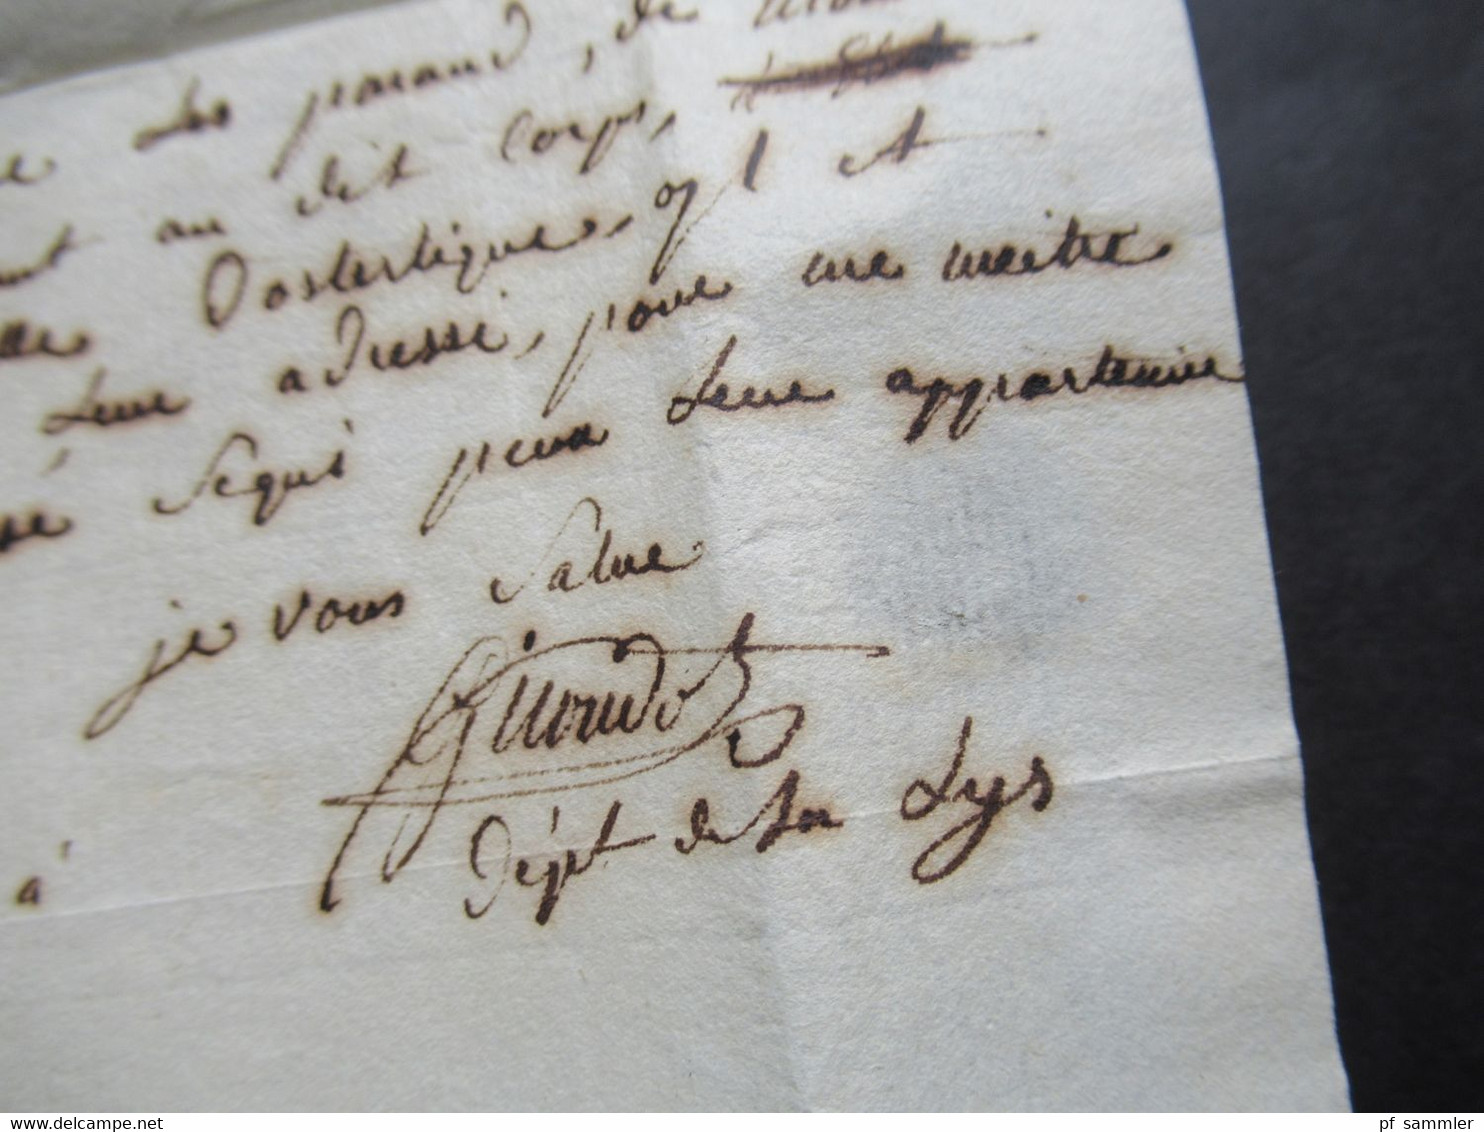 Frankreich 1806 Departement Conquis 91 Ostende handschriftlich Service Militaire / Armée  Brief doppelt verwendet!